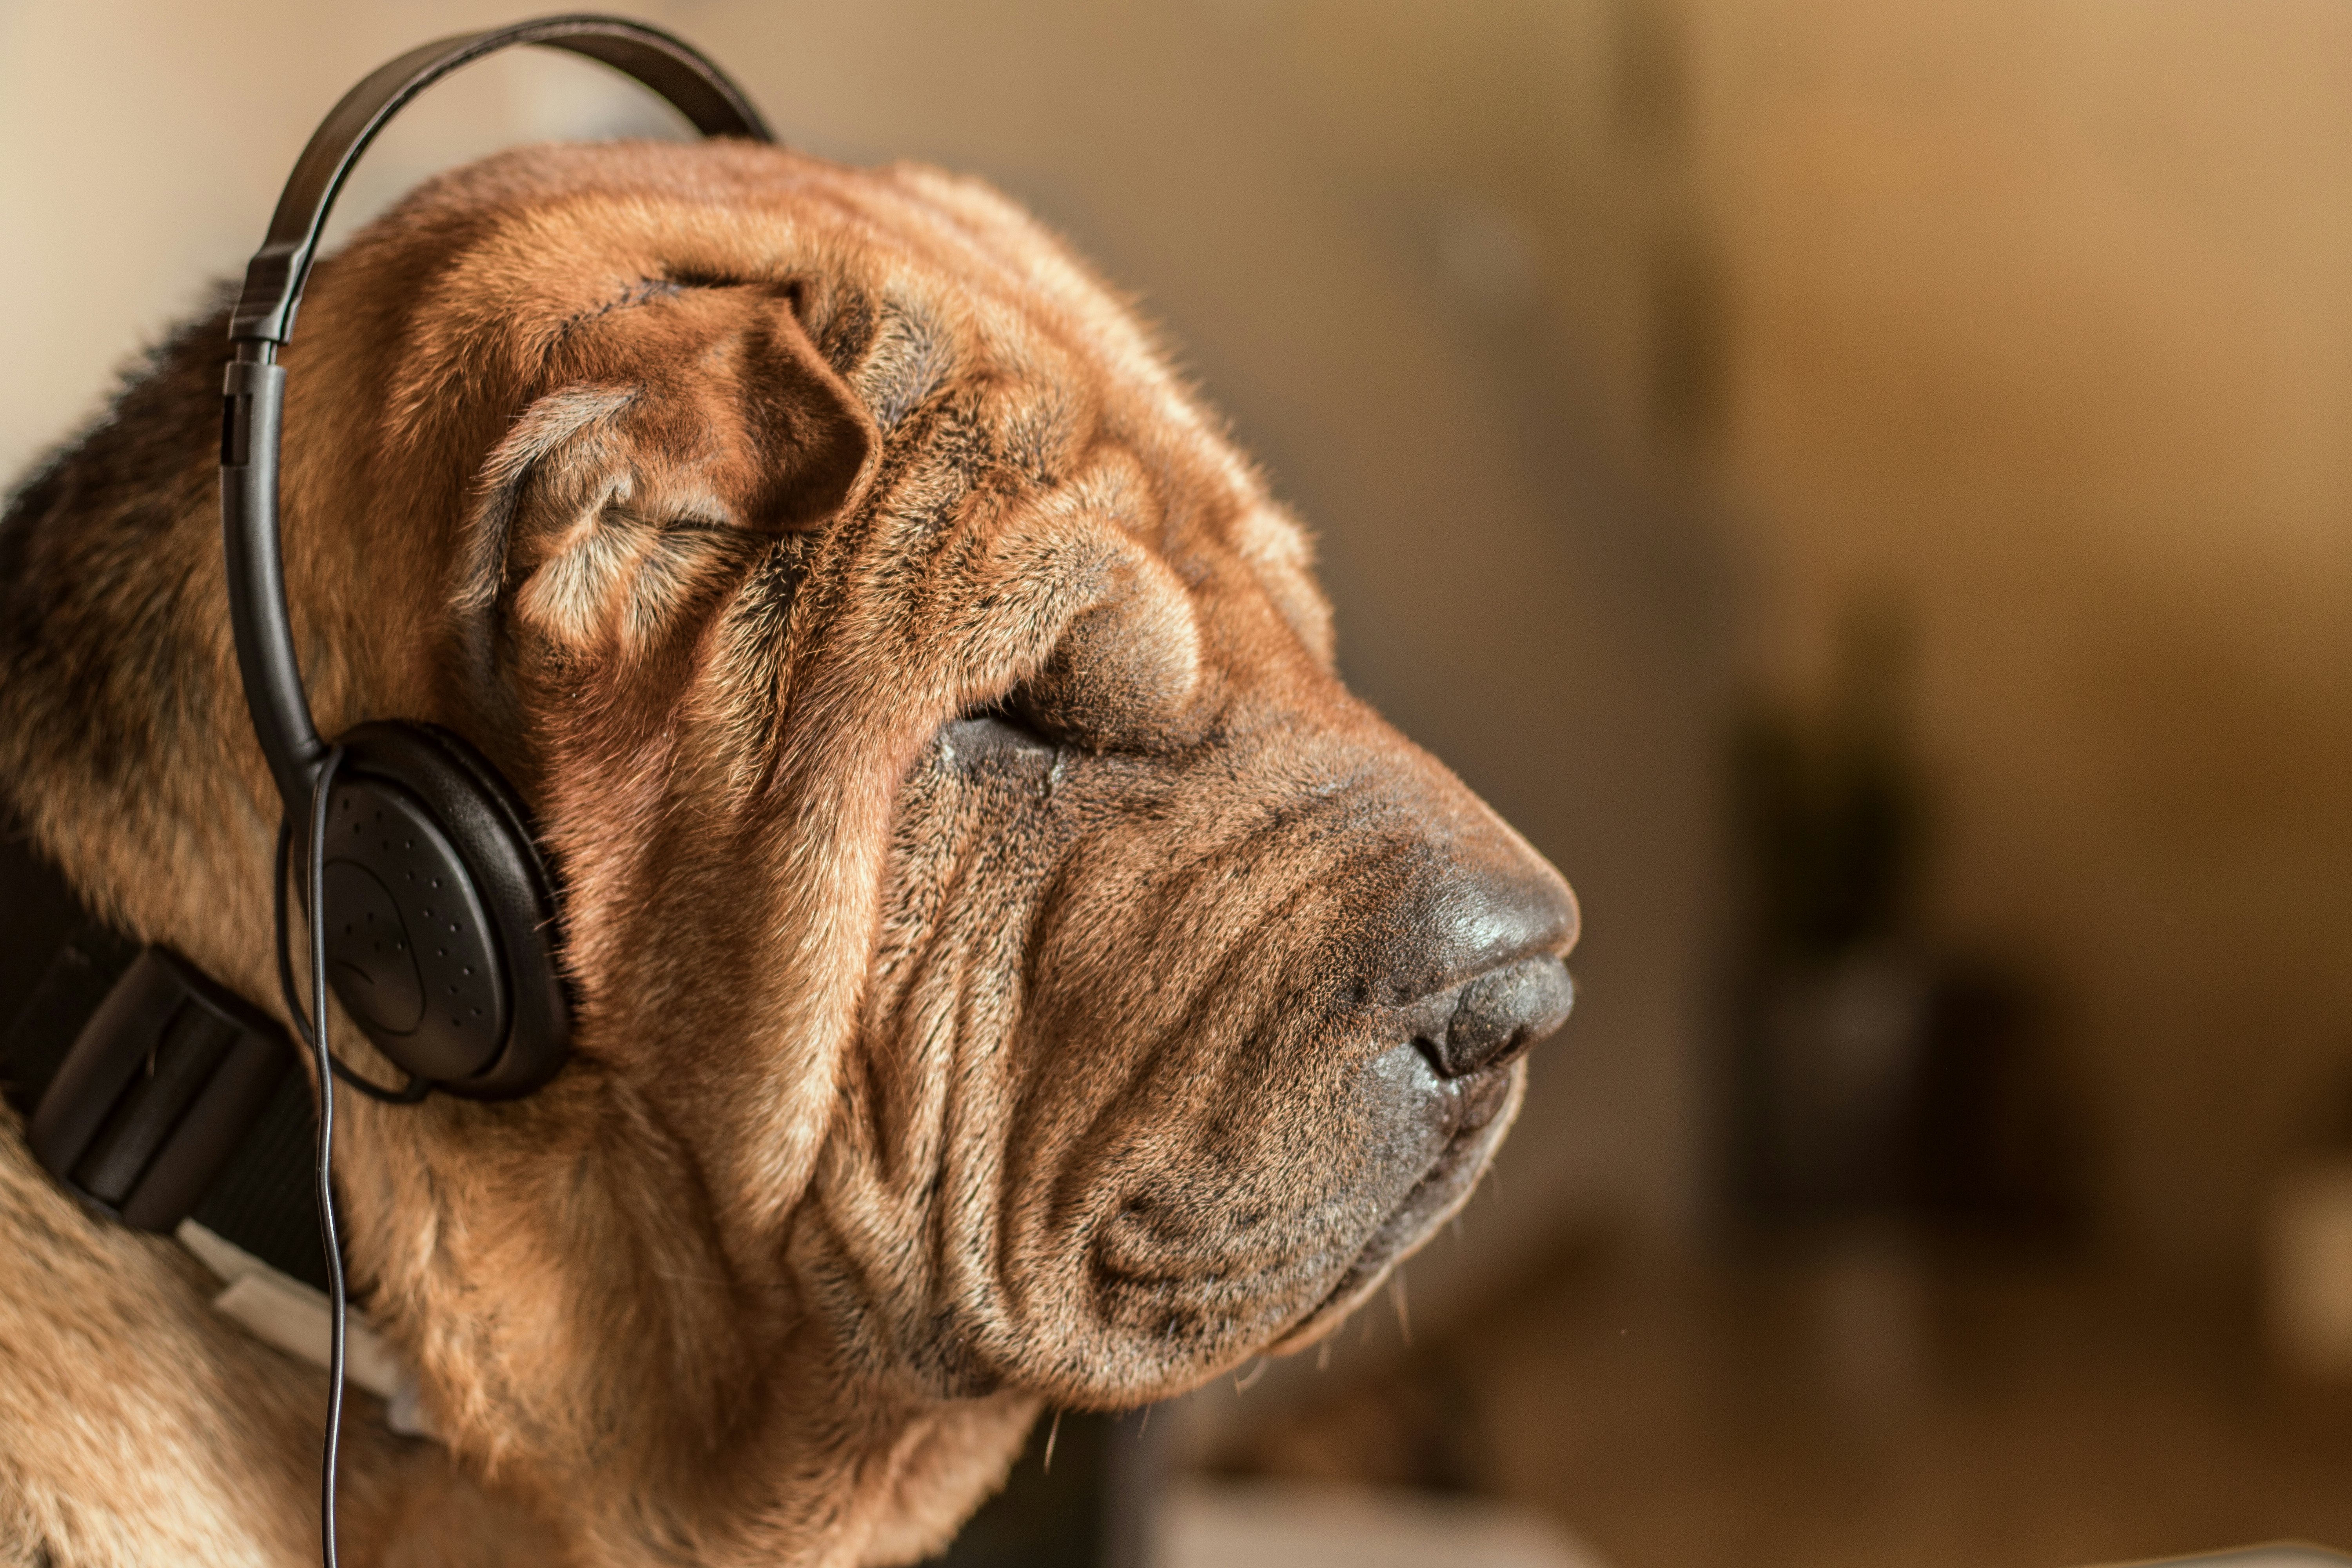 songs to help dogs sleep